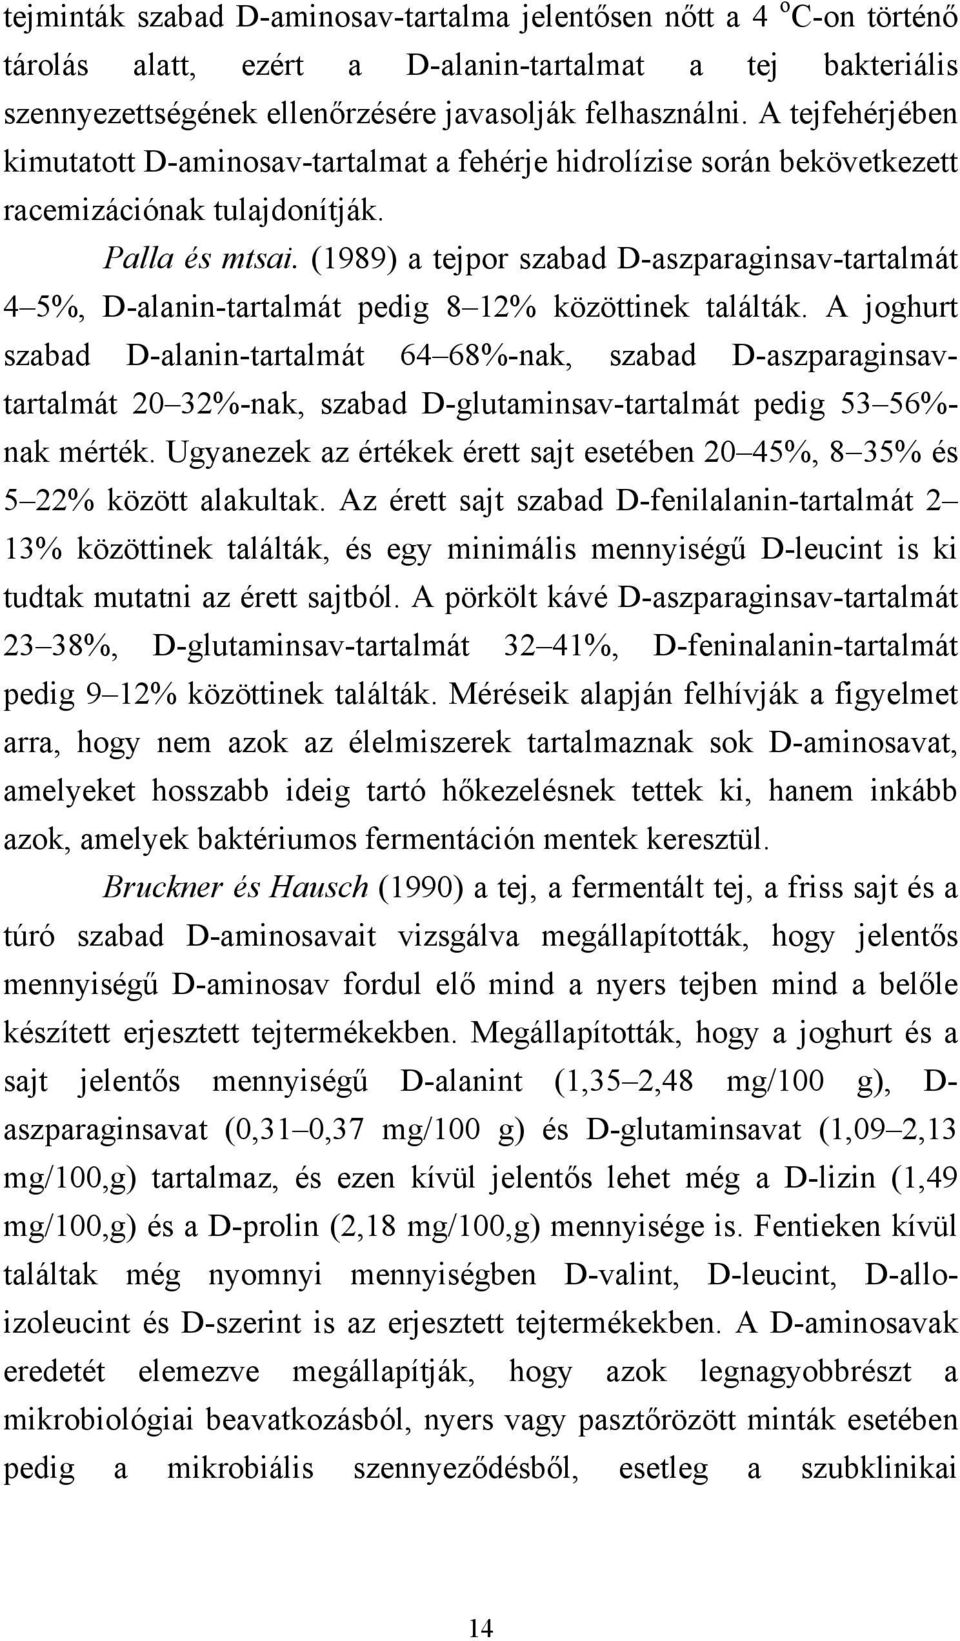 (1989) a tejpor szabad D-aszparaginsav-tartalmát 4 5%, D-alanin-tartalmát pedig 8 12% közöttinek találták.